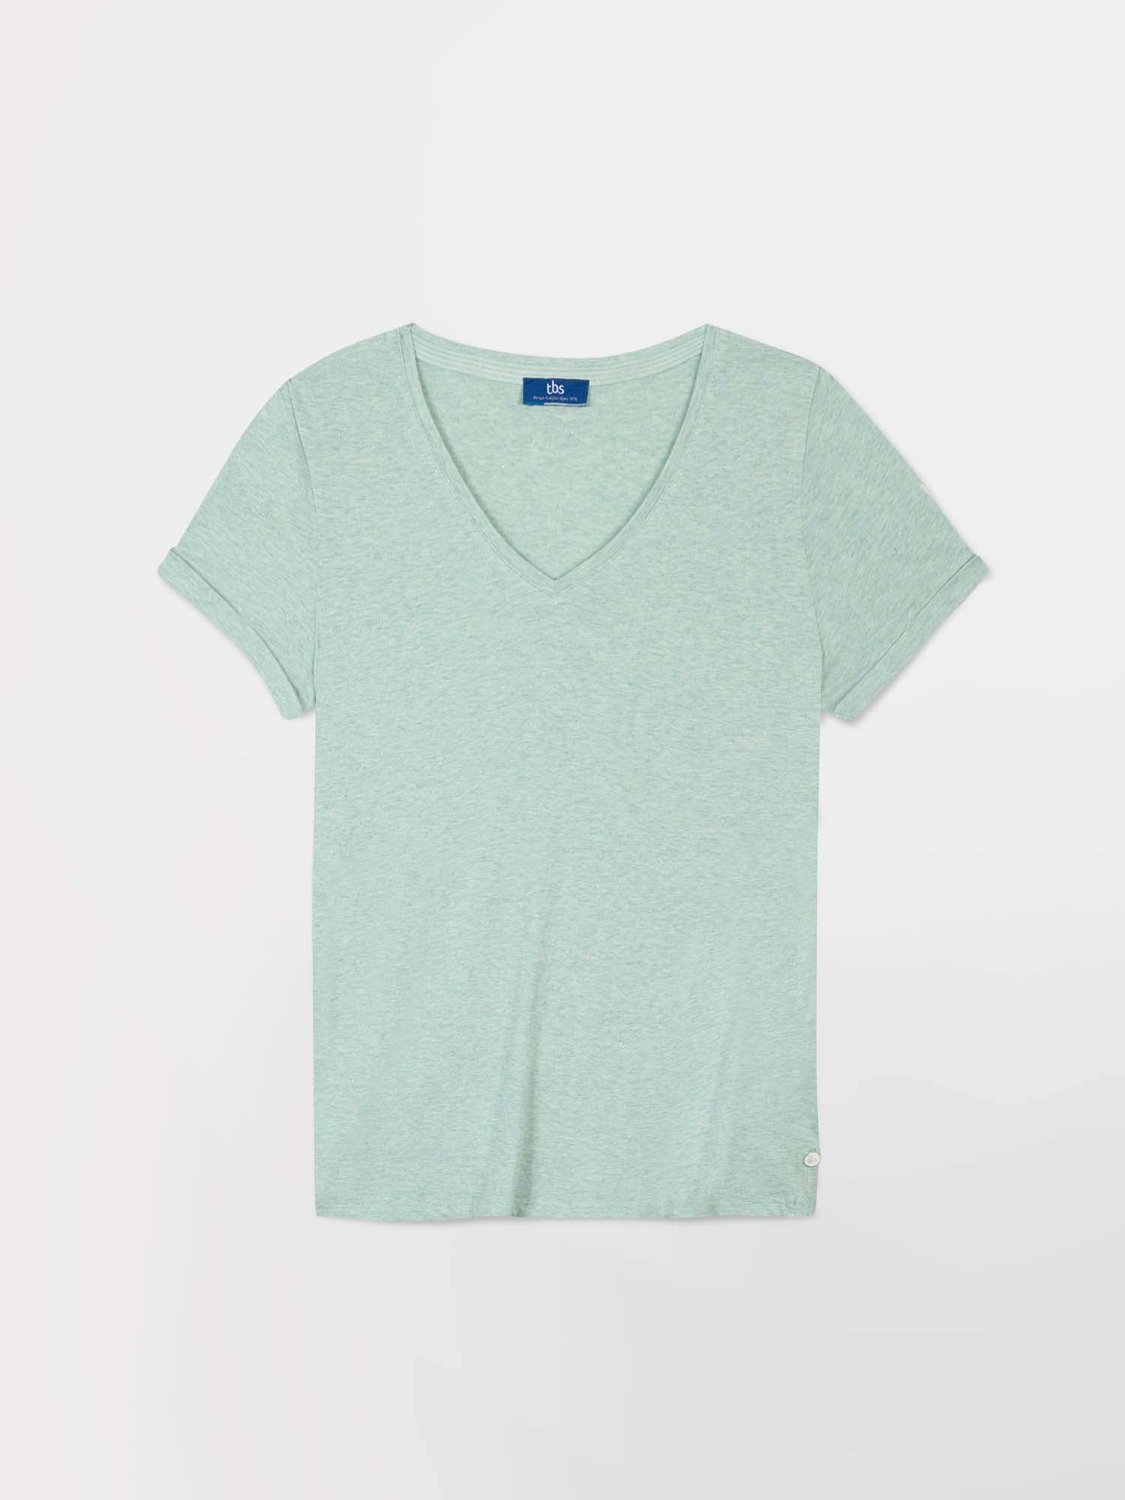 Tee-Shirt Femme Col V Jersey Coton Vert Clair